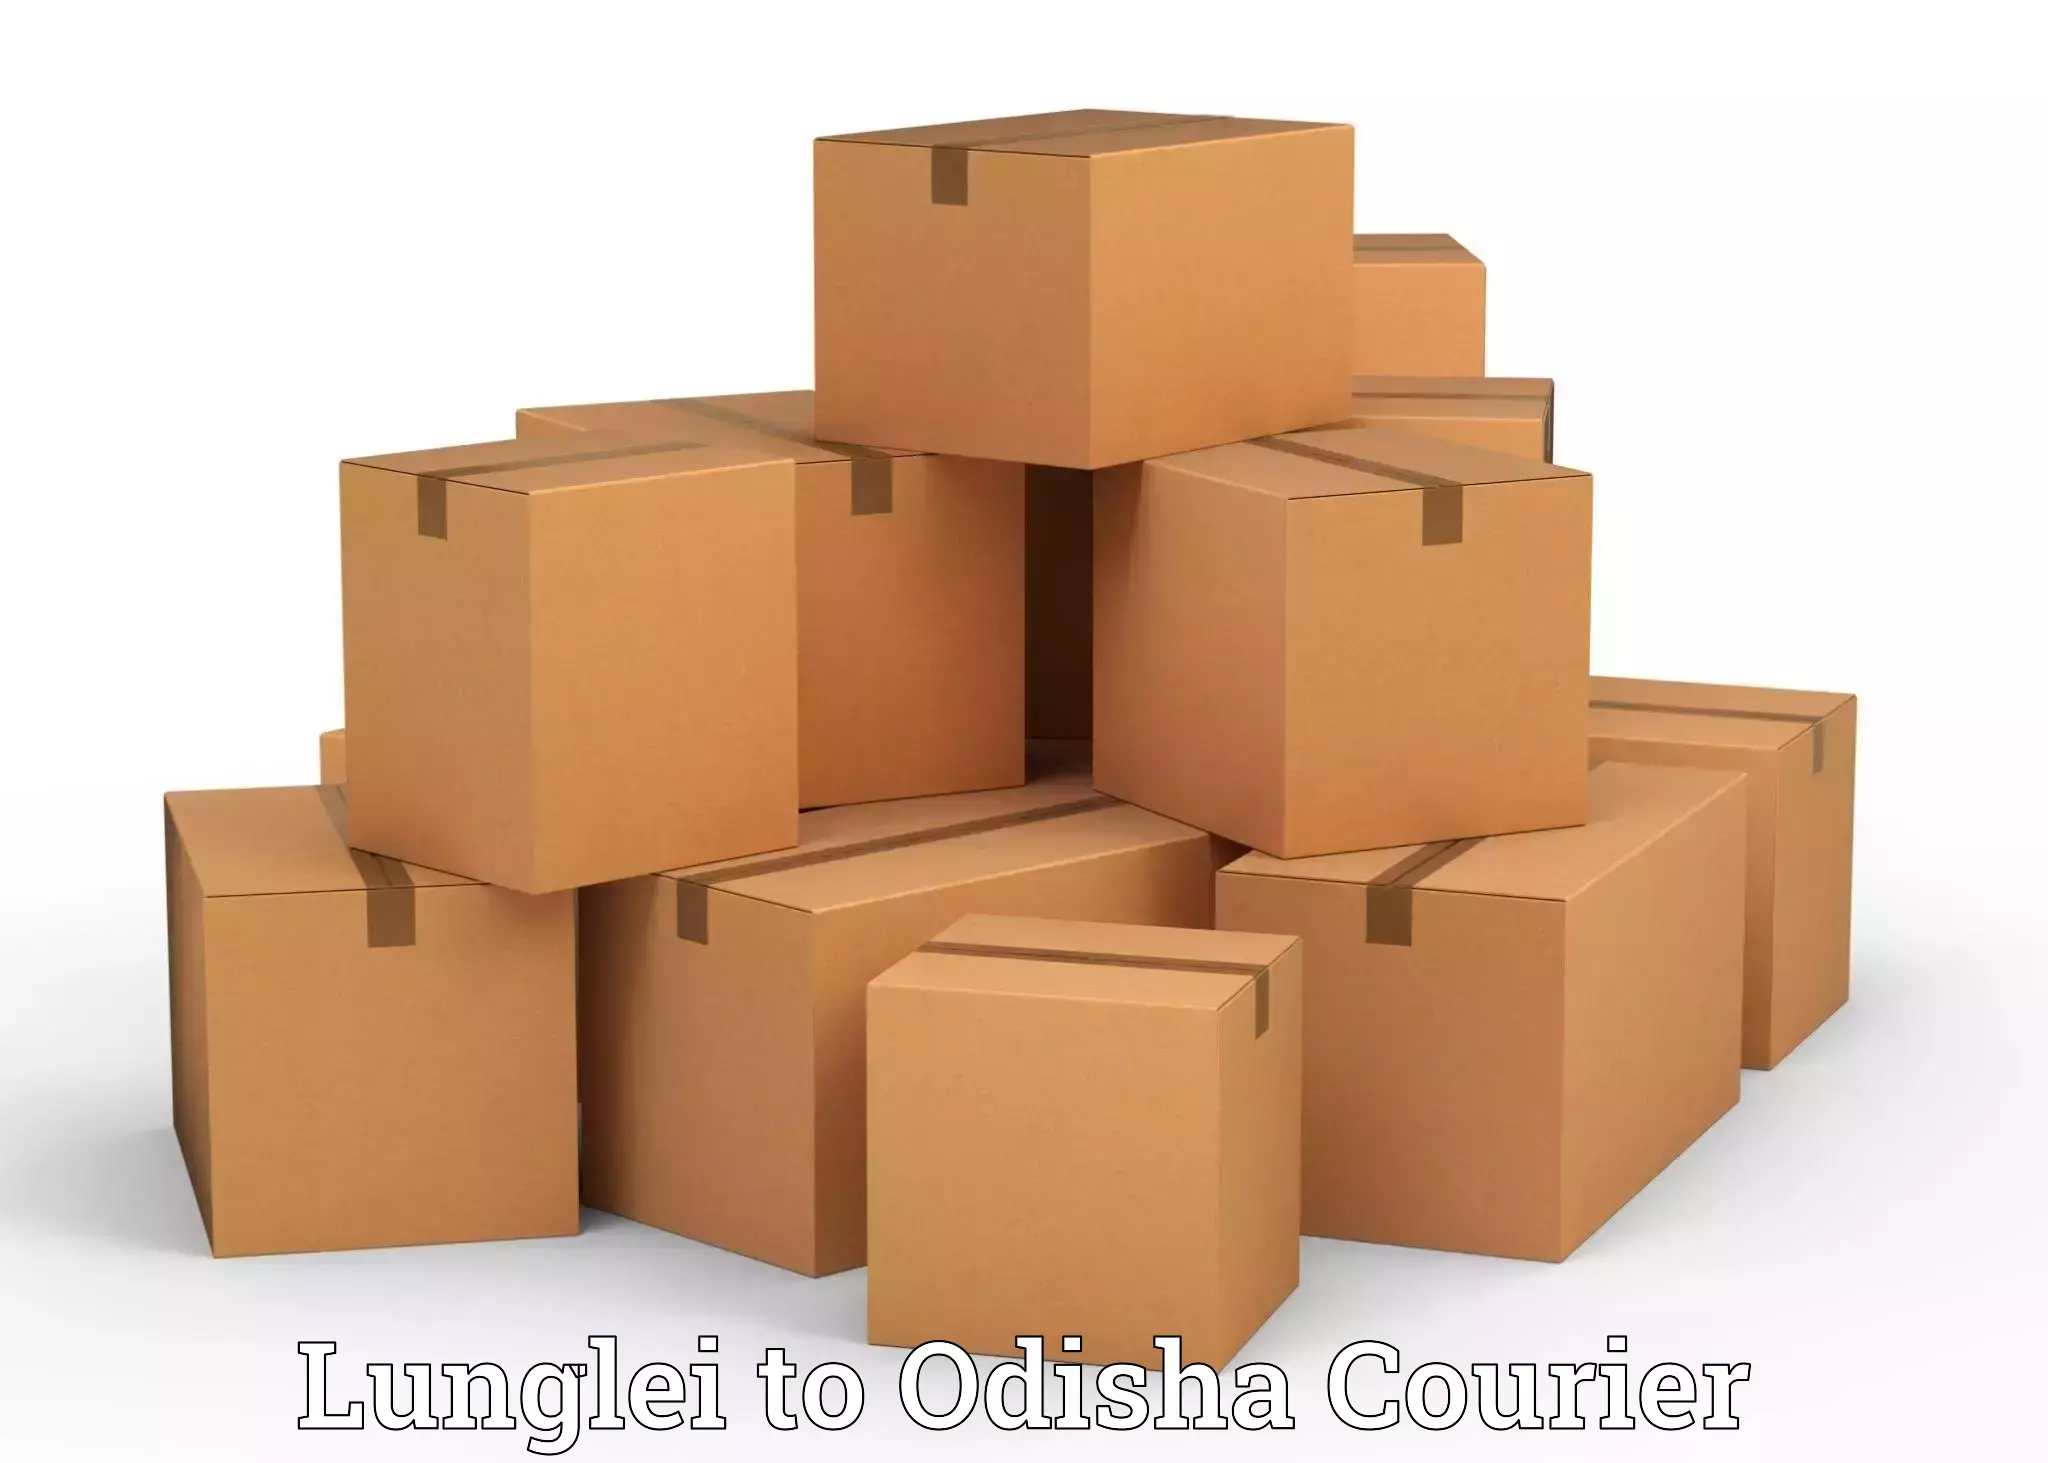 Professional furniture relocation Lunglei to Titilagarh